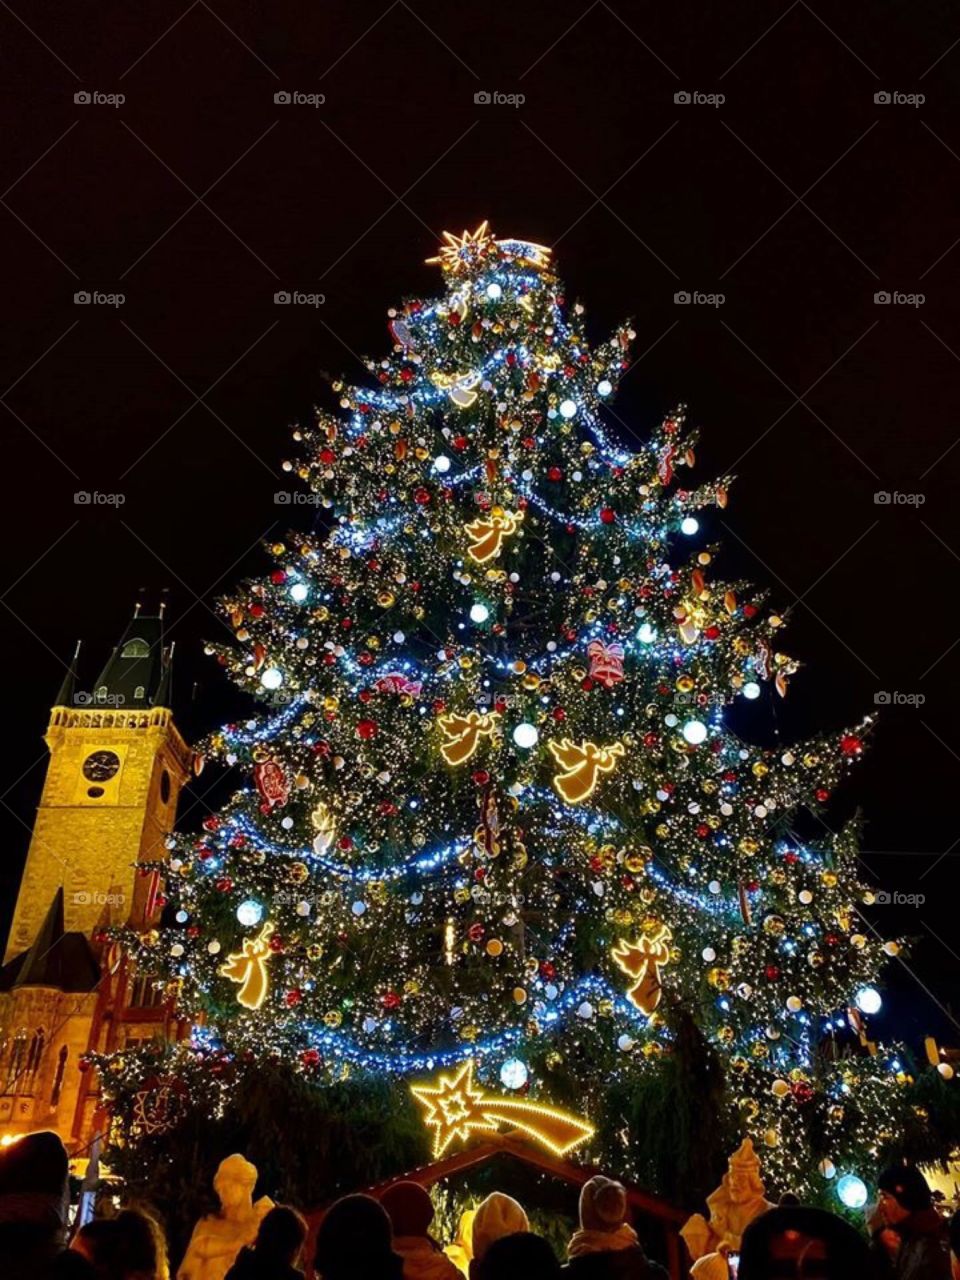 Prague Christmas market 